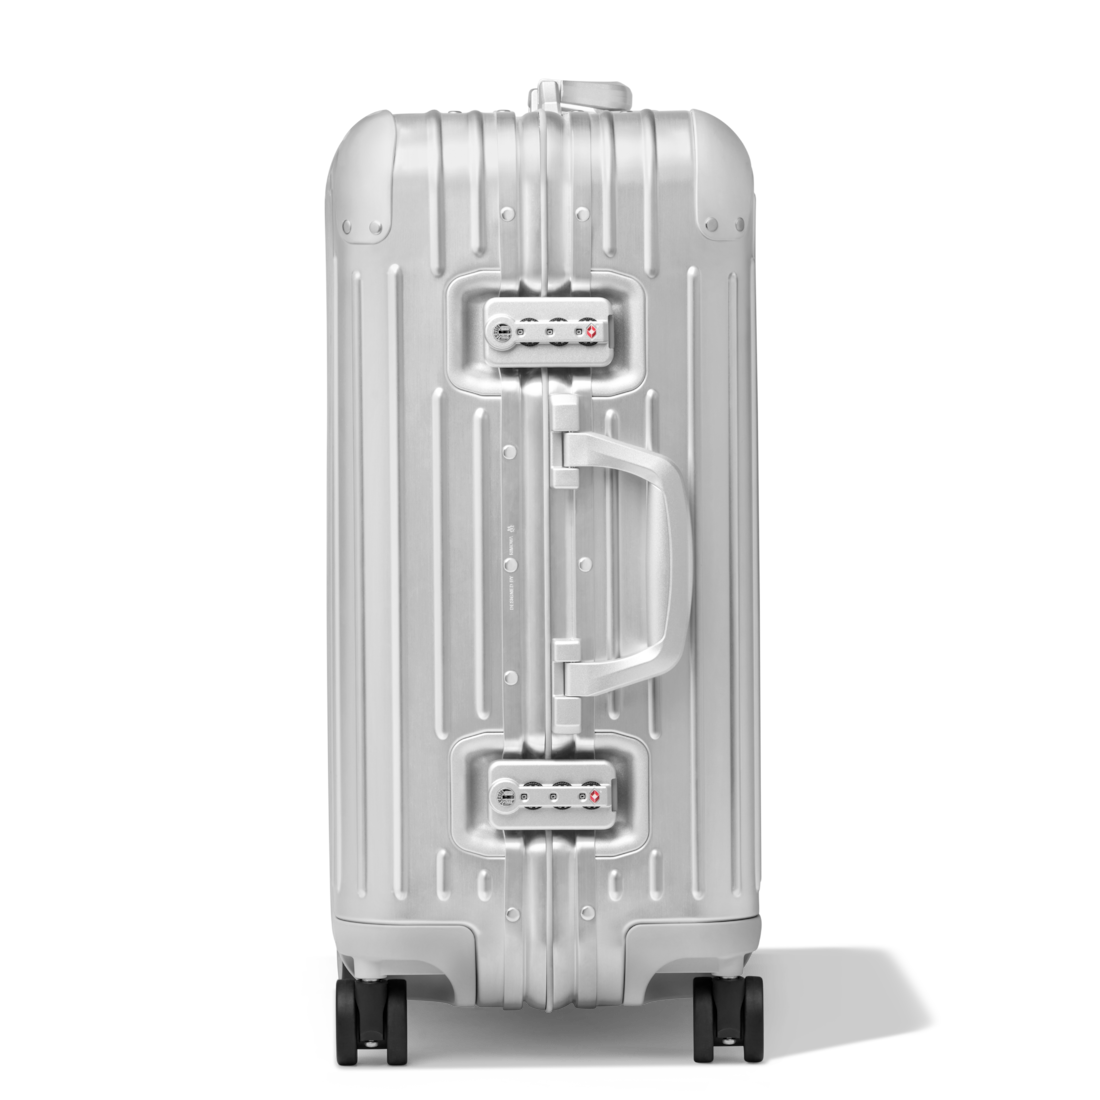 Rimowa Original Check-In L Suitcase - Silver